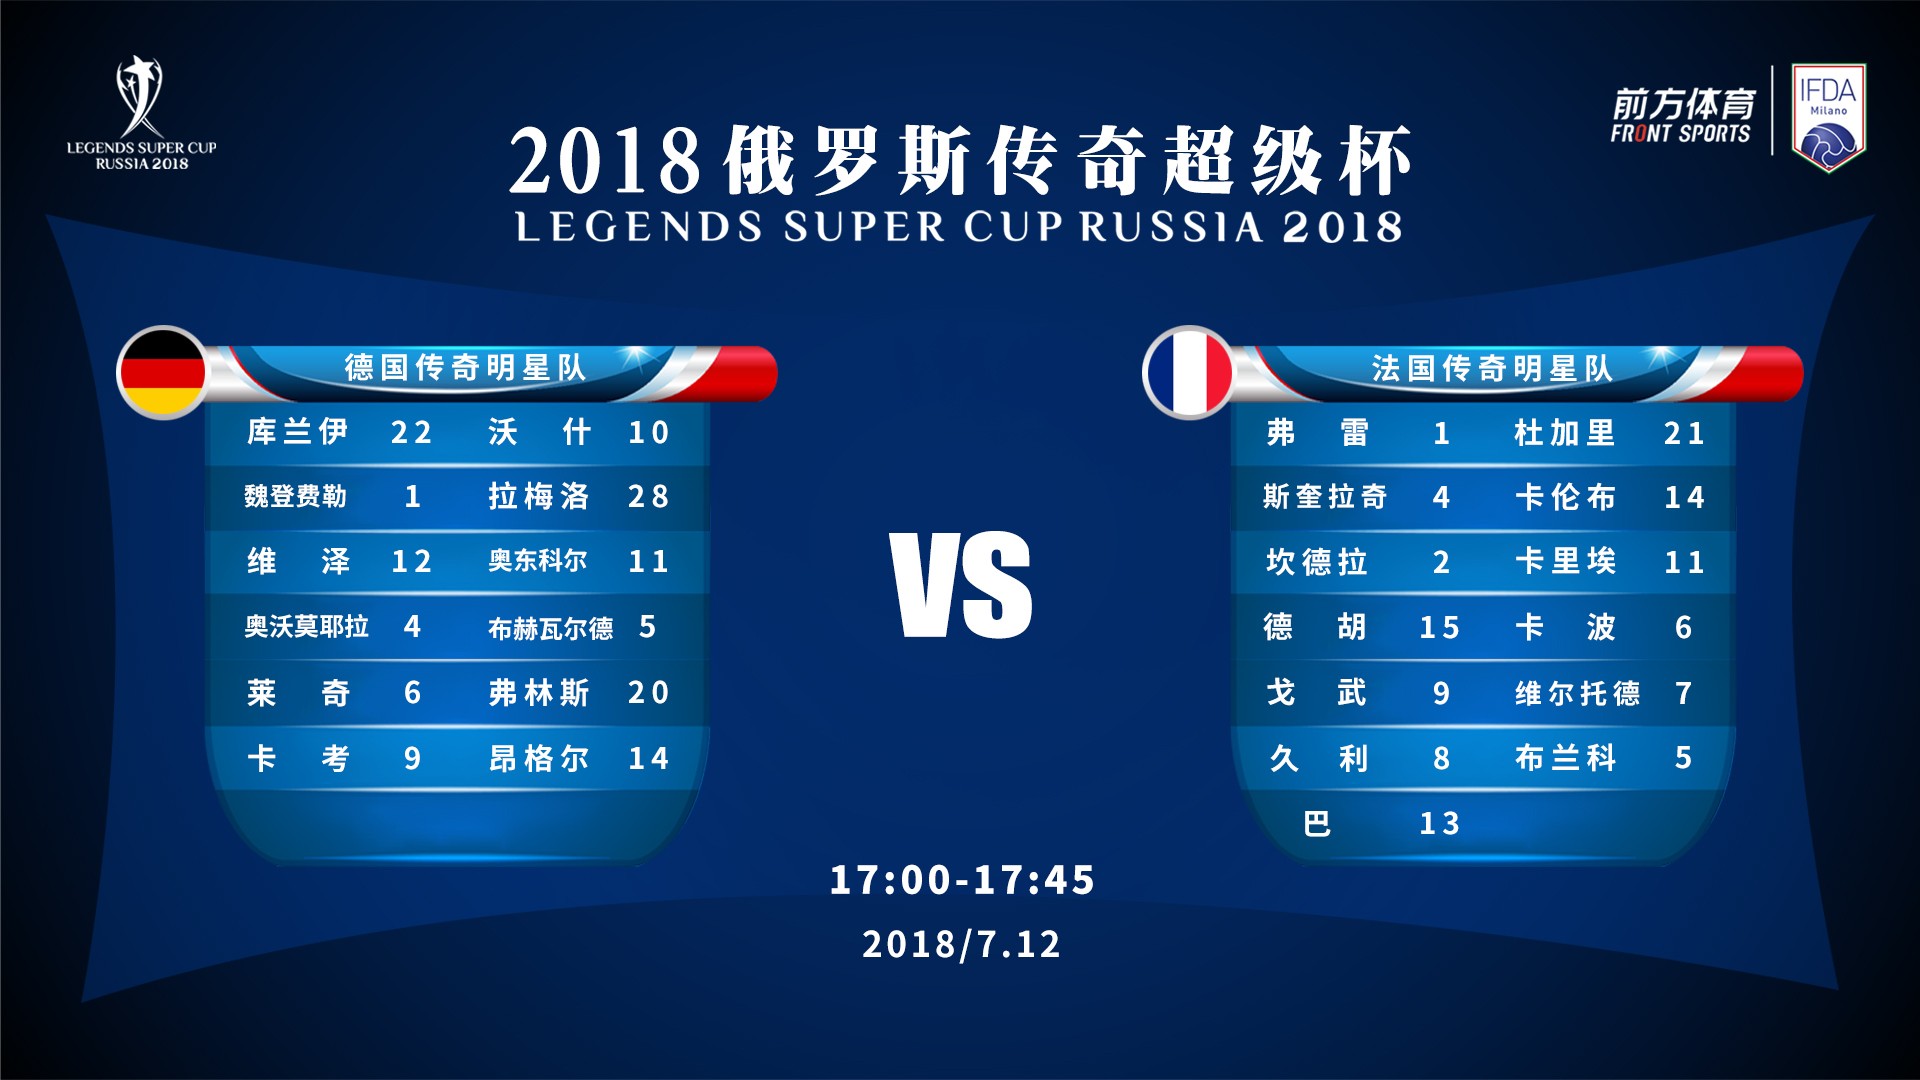 2018俄罗斯传奇超级杯今日赛程:中国迎战世界